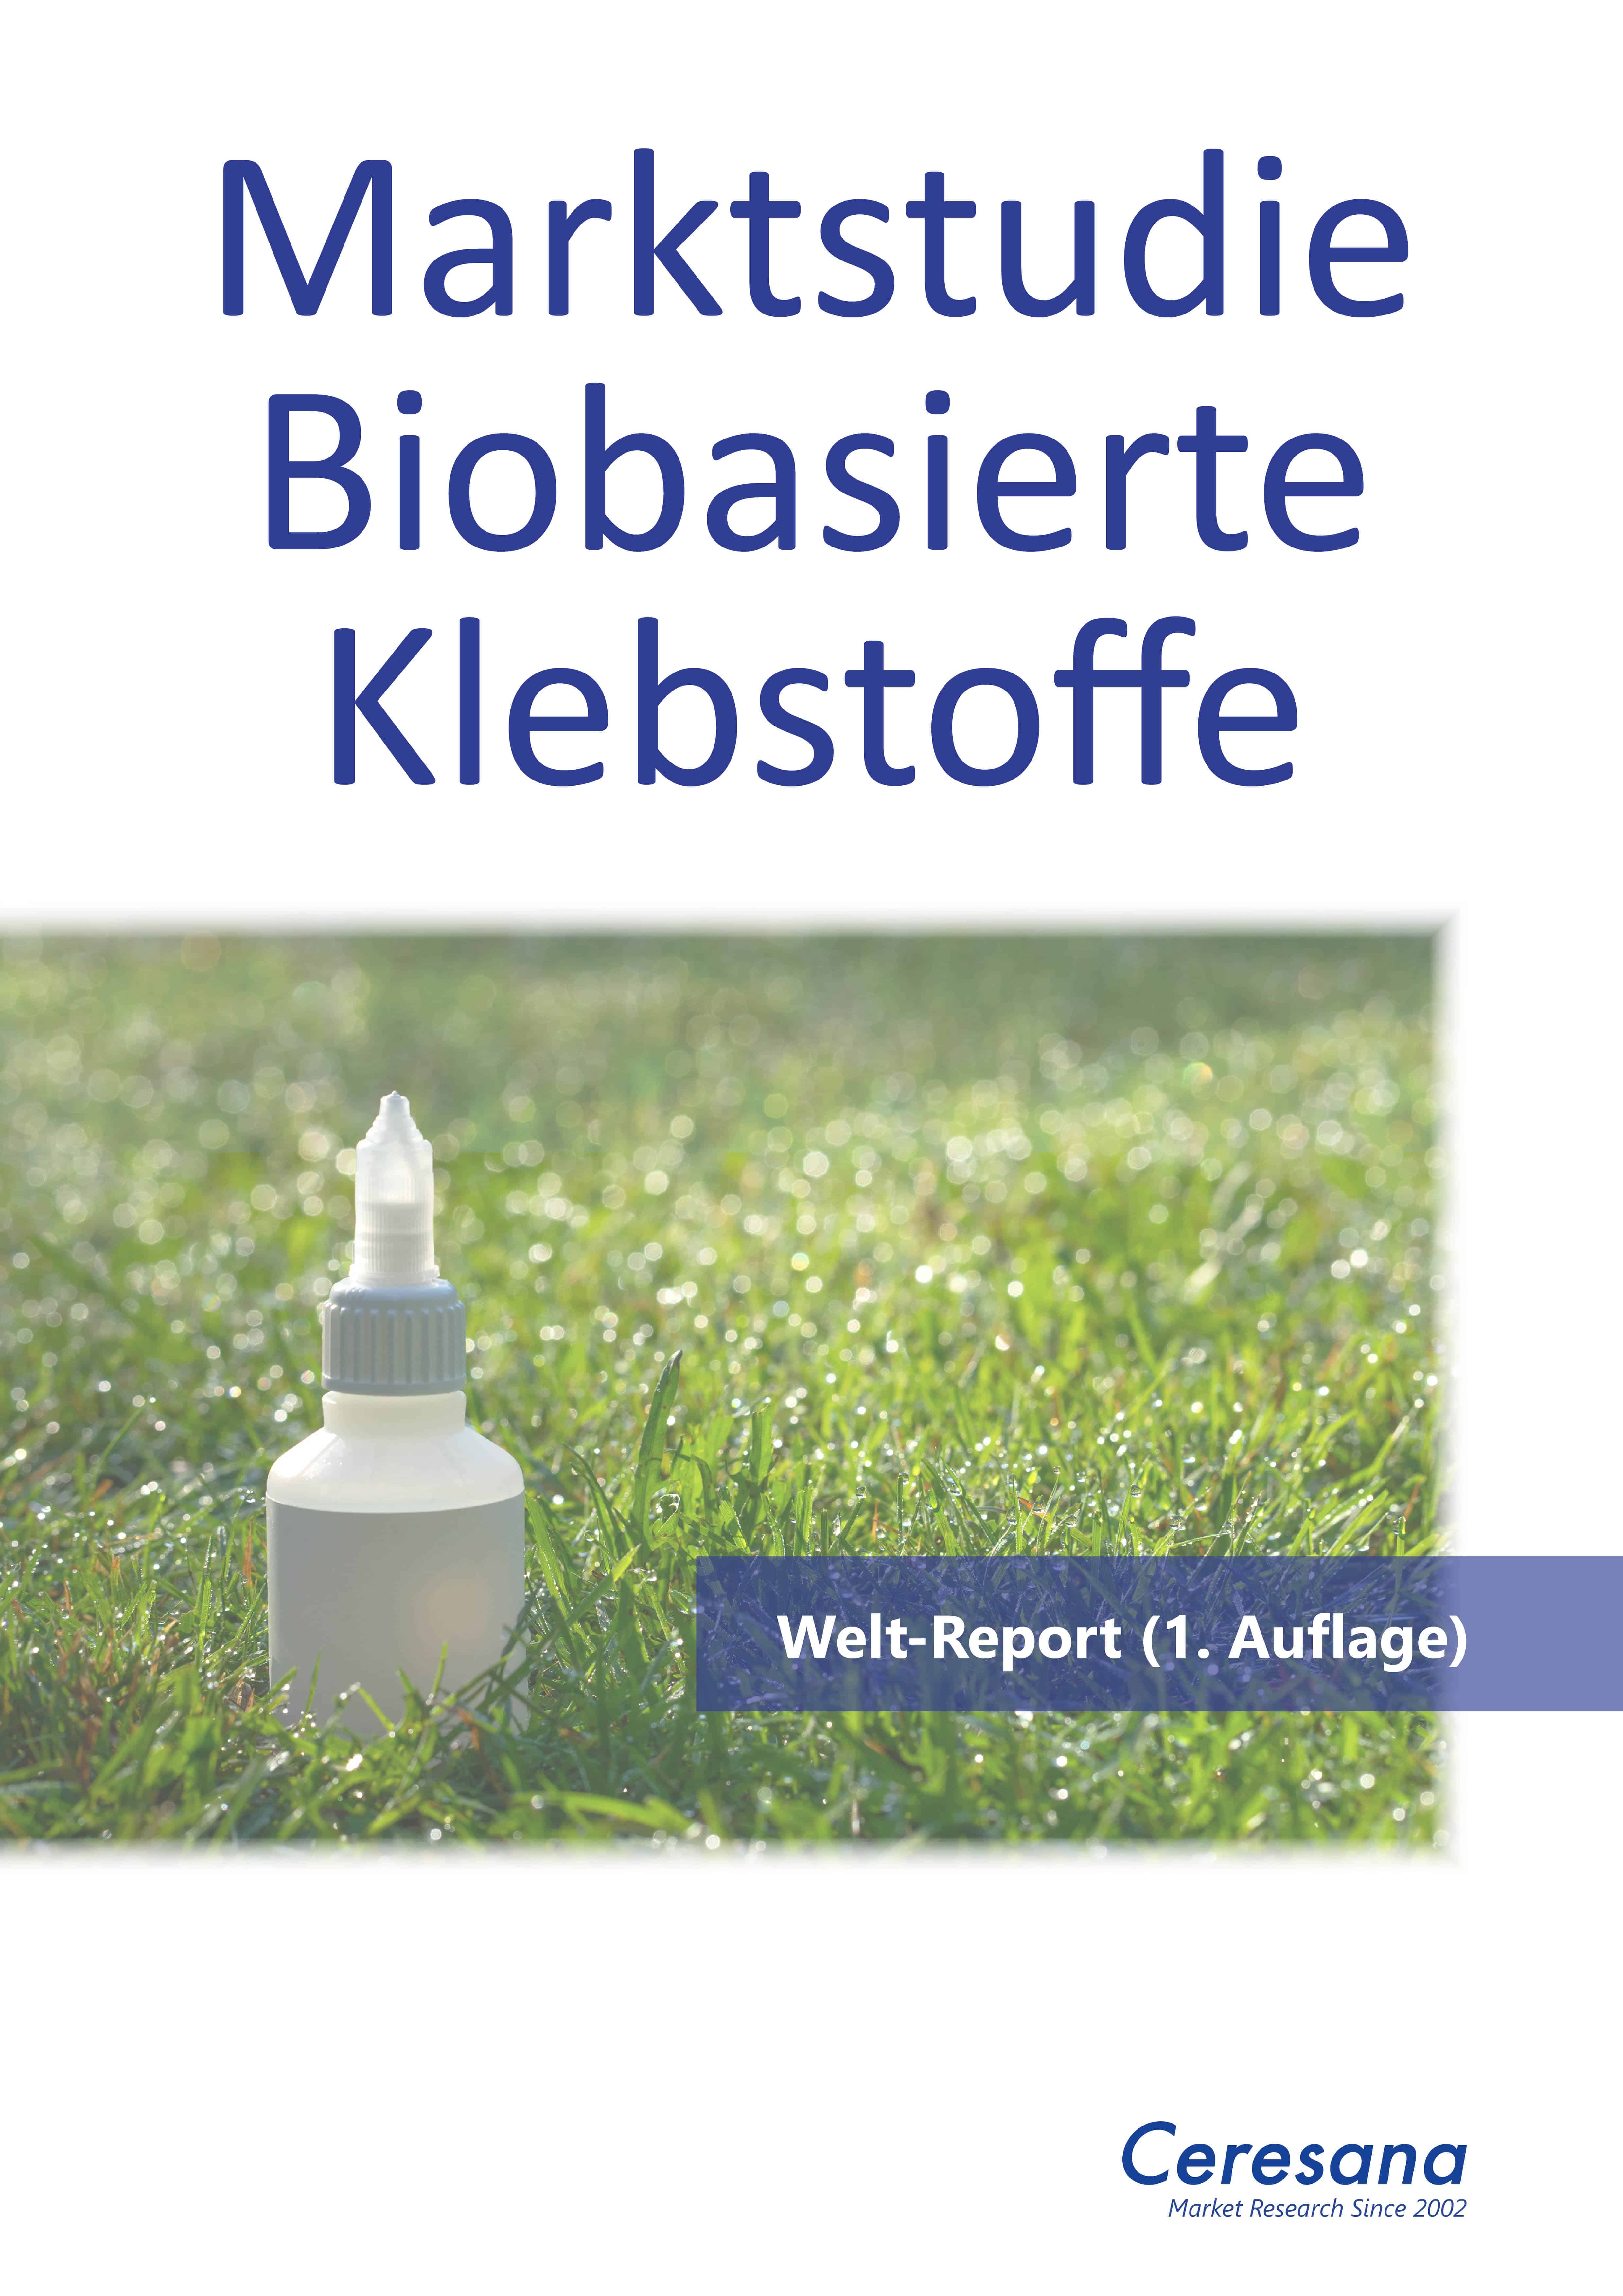 Die Marktstudie „Biobasierte Klebstoffe“ ist erhältlich (Quelle: Ceresana)